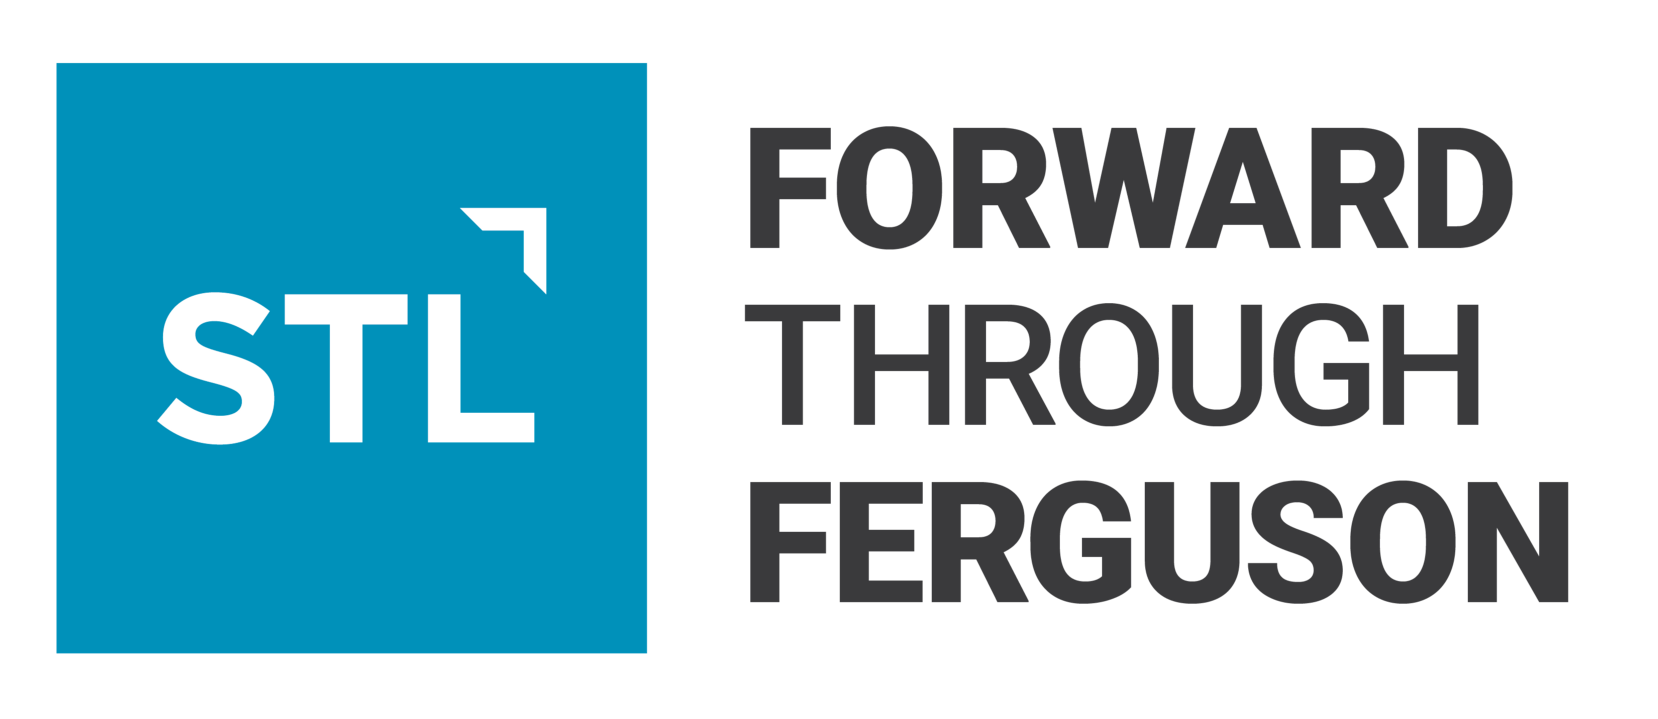 ftf logo.png